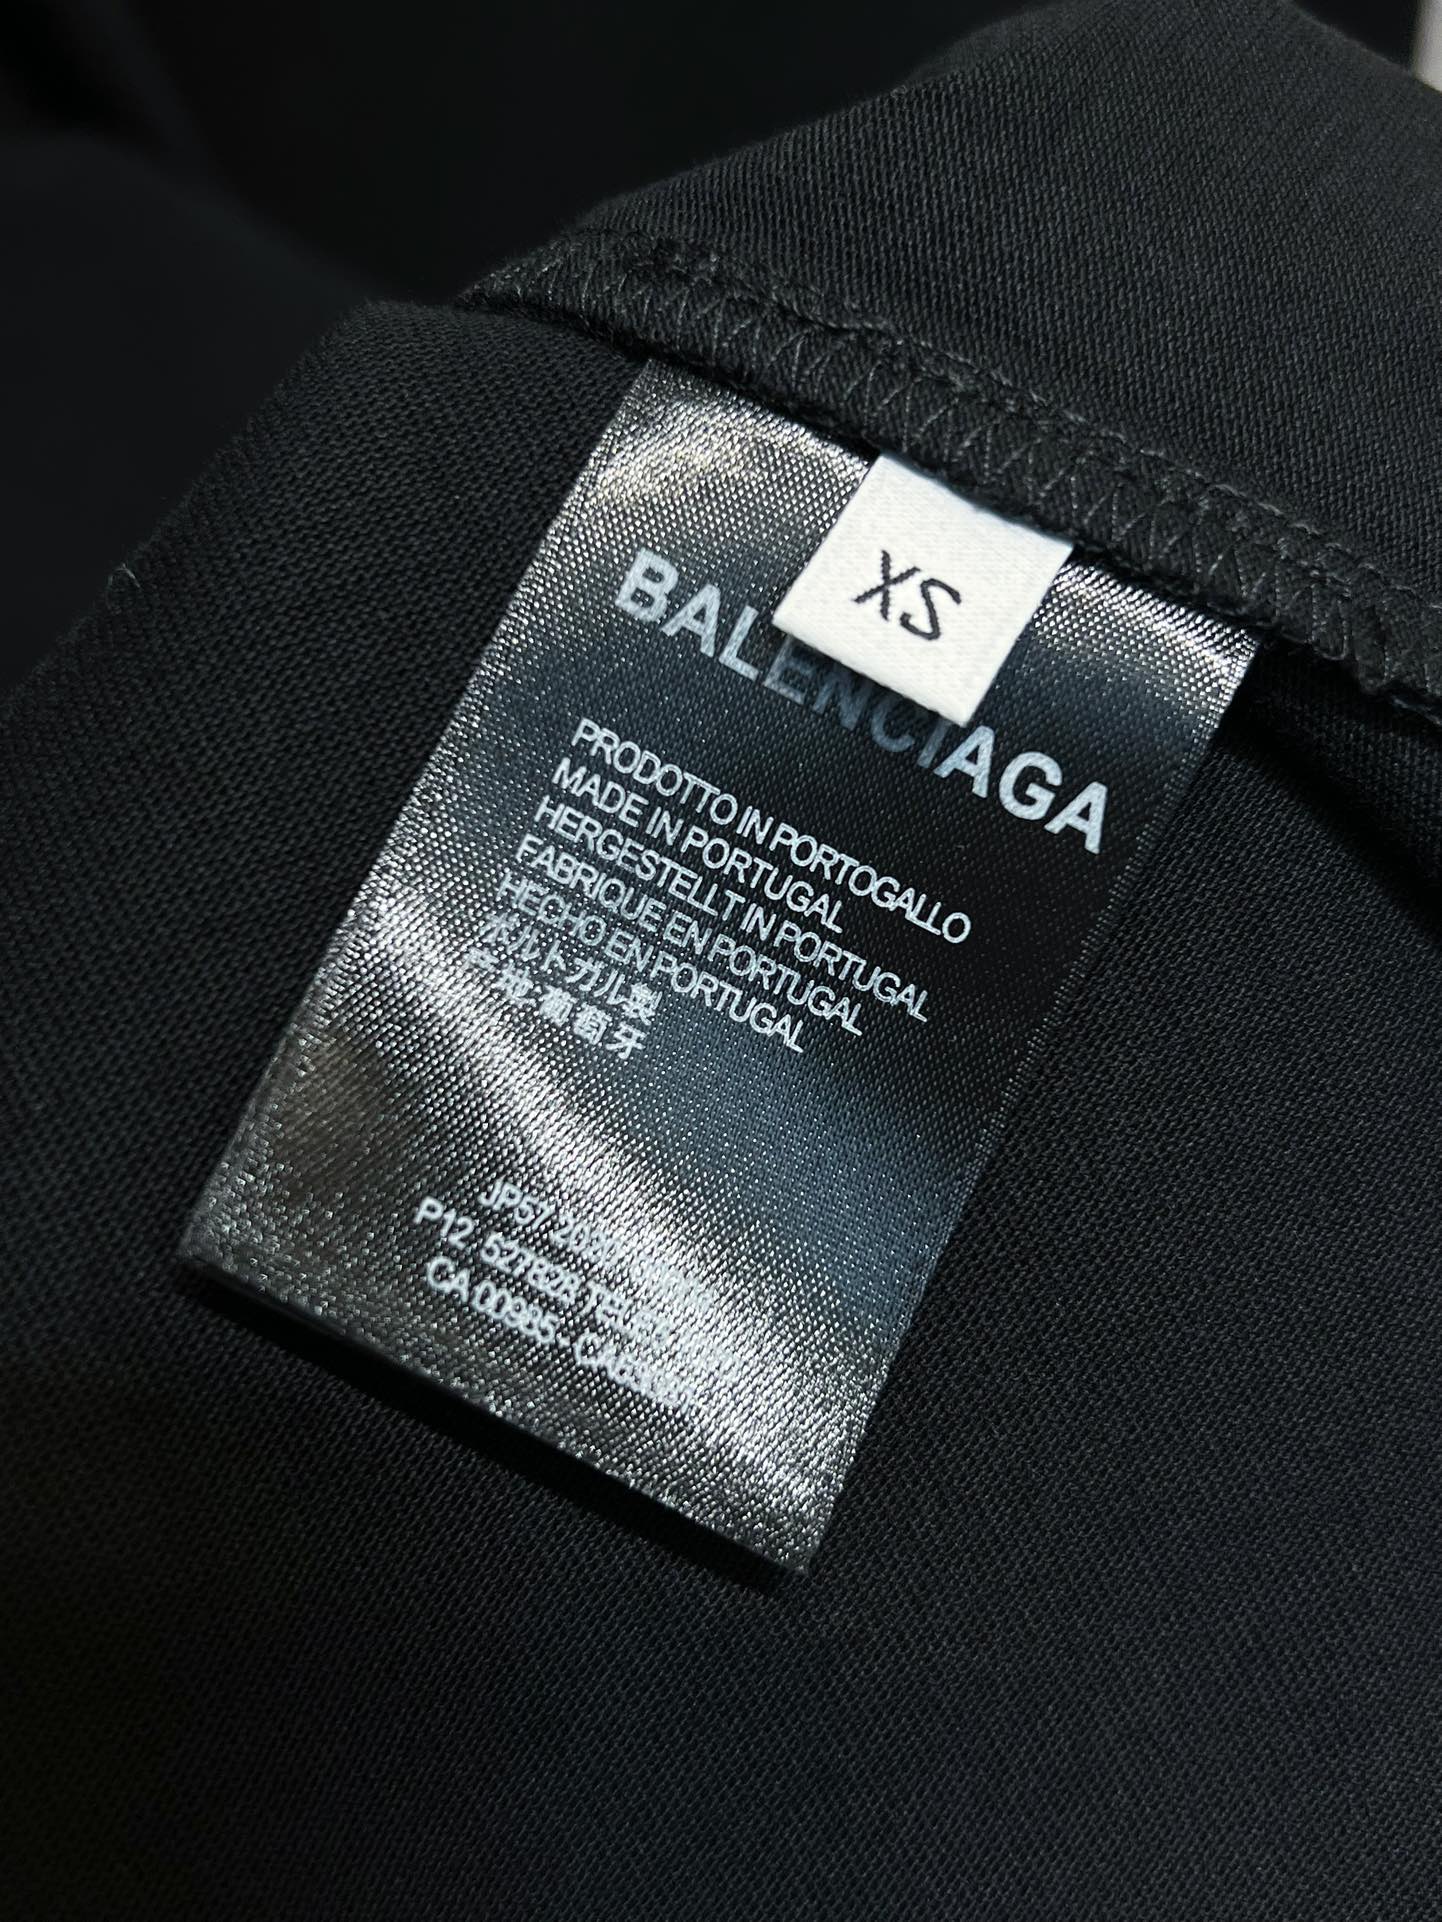 BalenciagaxBMW联名T恤采用了圆领设计非常舒适不会束缚颈部同时正面印有Balenciaga和